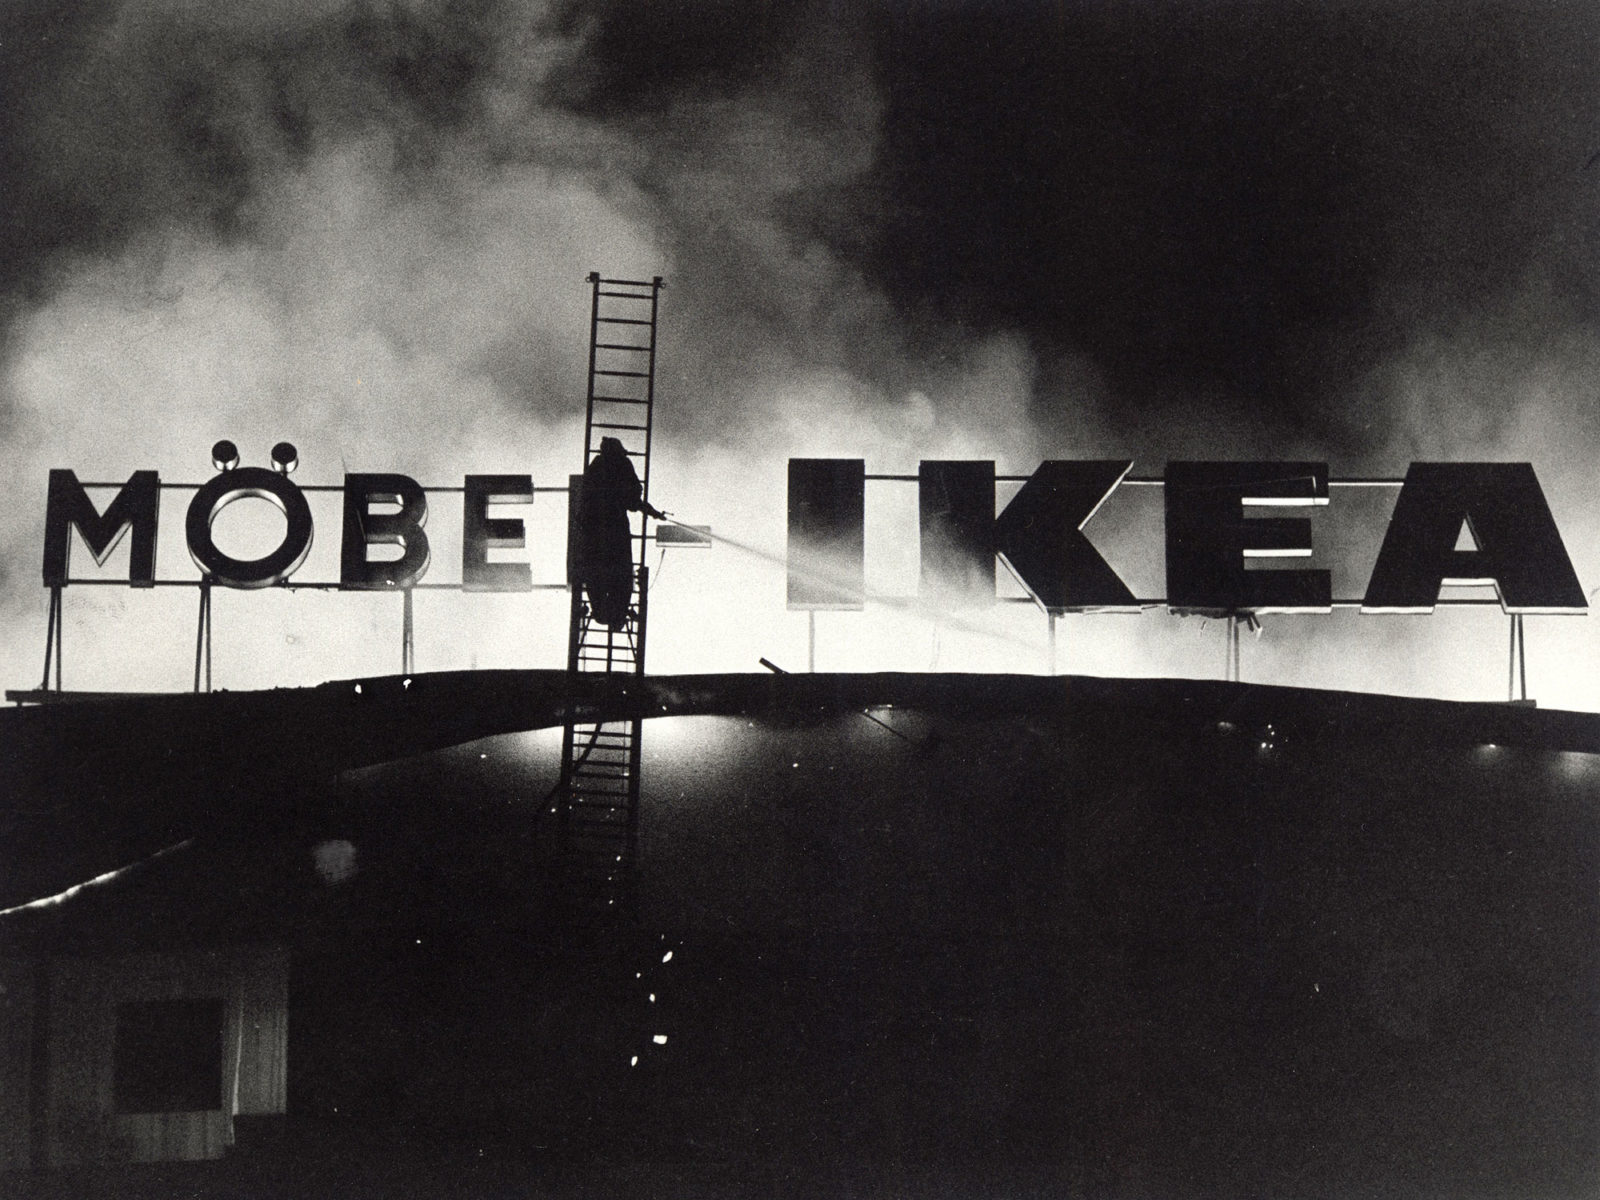 En brandman står på en brandbilsstege och sprutar vatten på ett neonskylt med texten MÖBLER IKEA, omgiven av rök.